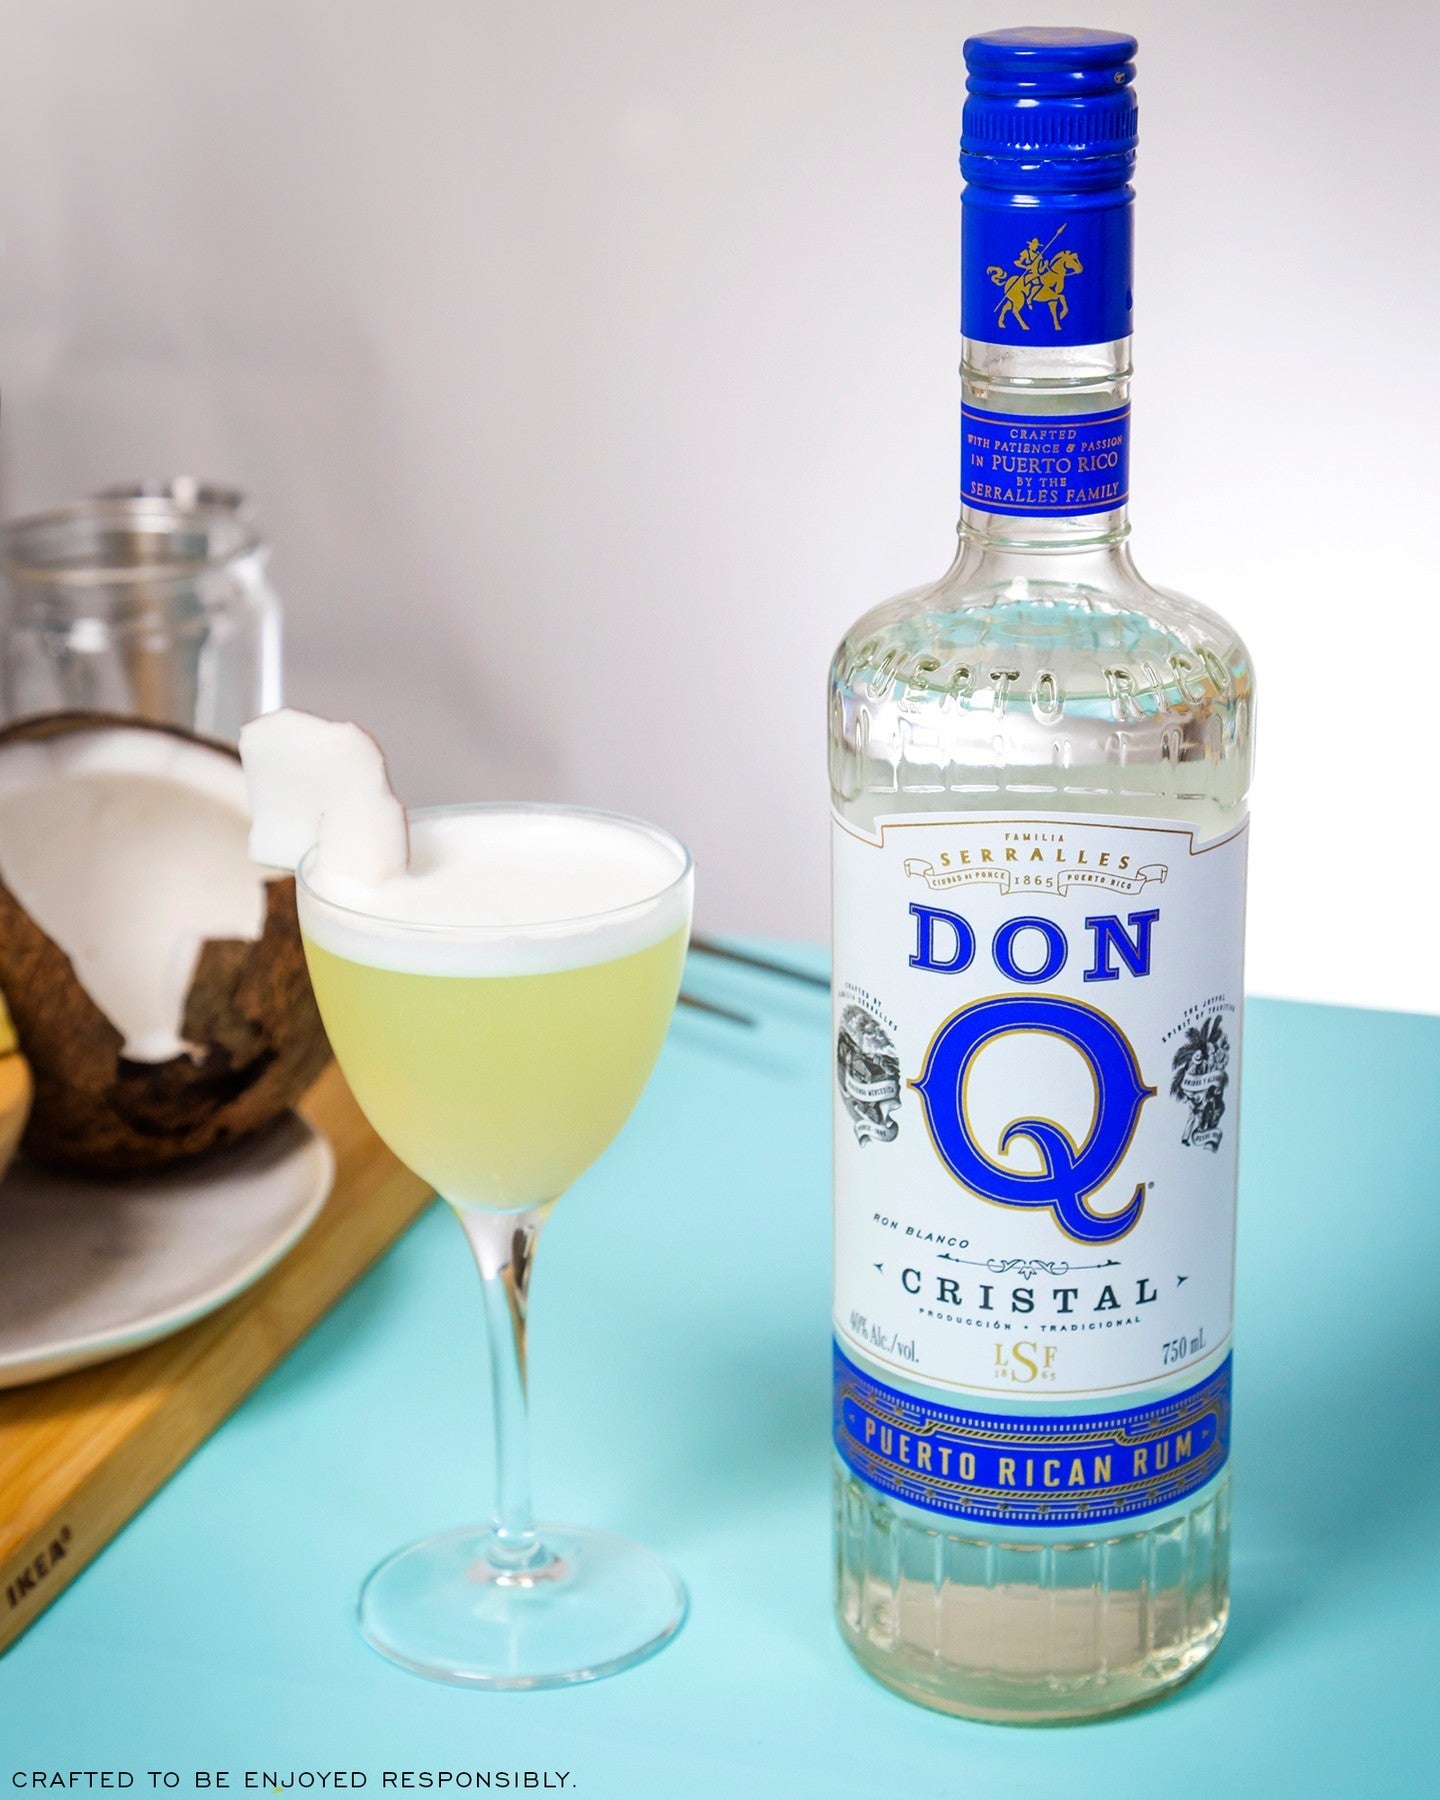 Don Q Cristal Rum